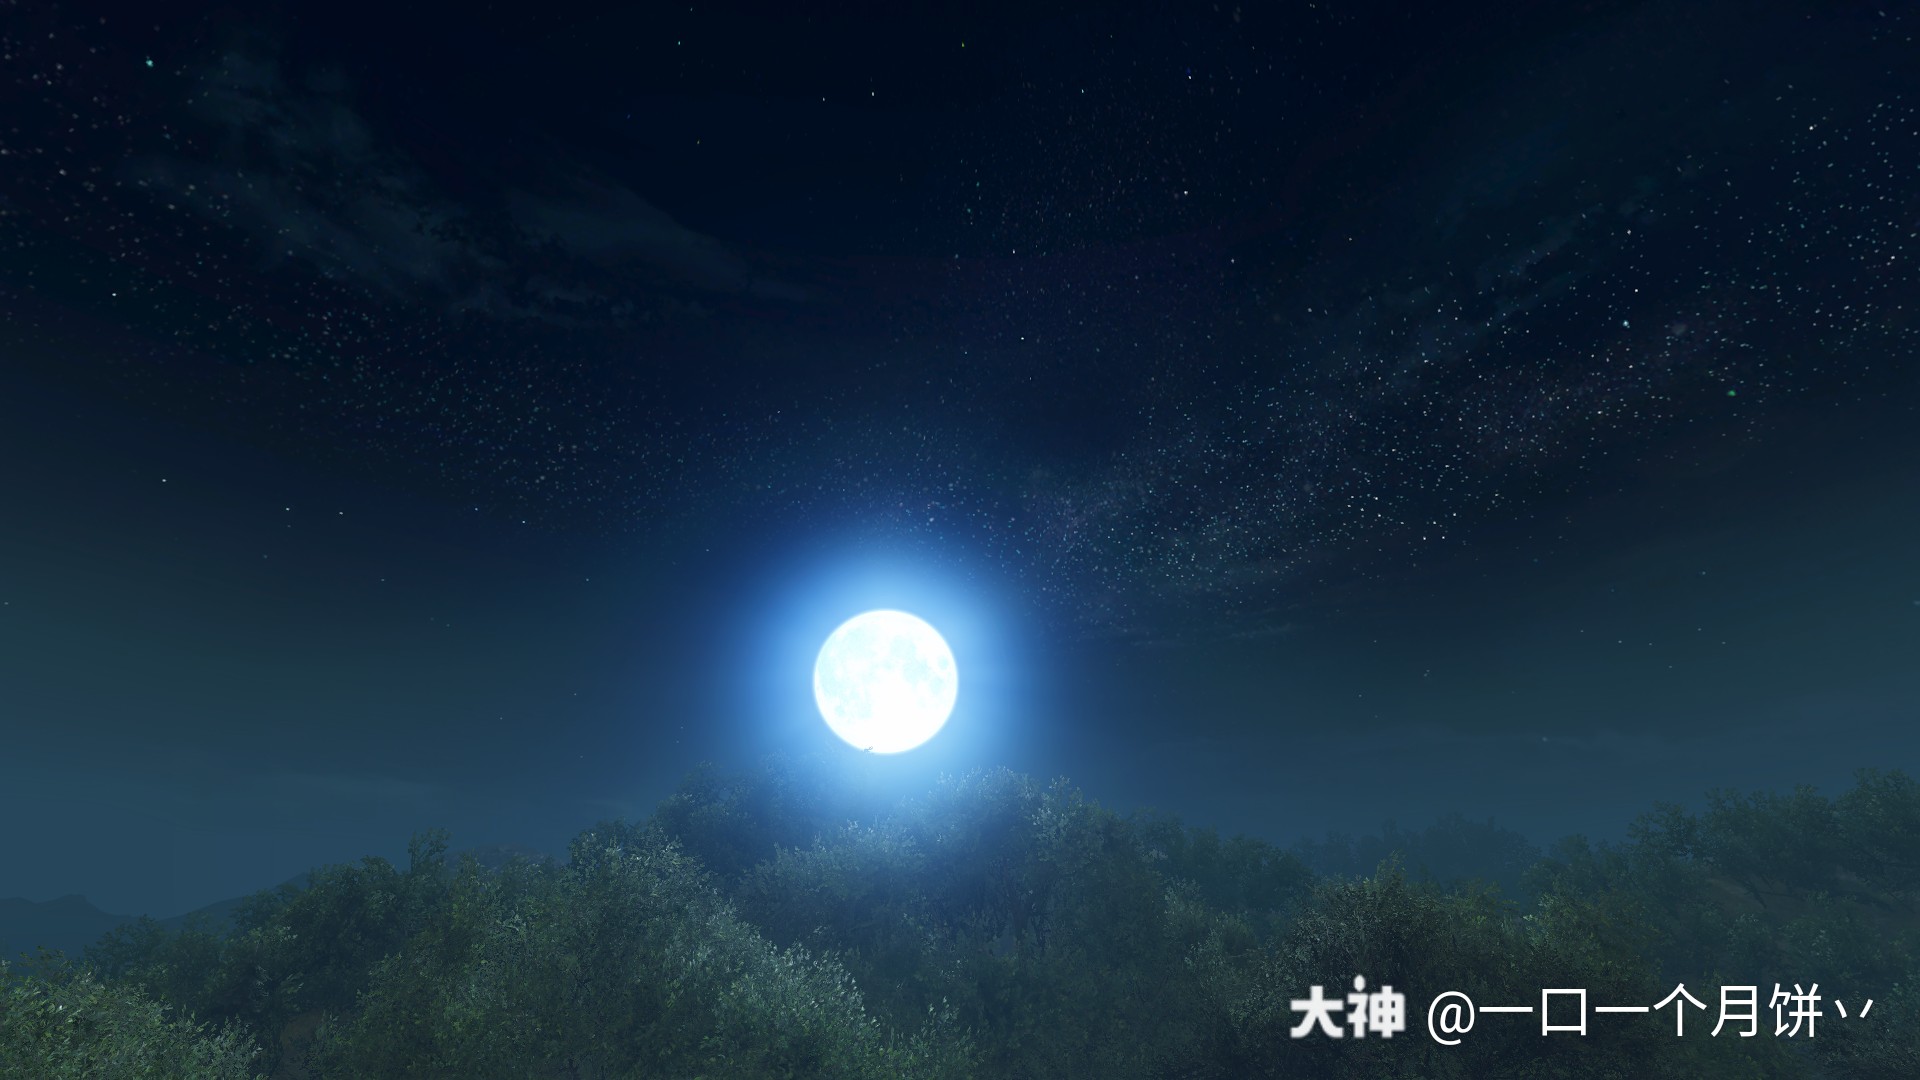 皓月当空,漫天繁星,这静谧的夜空真好看!